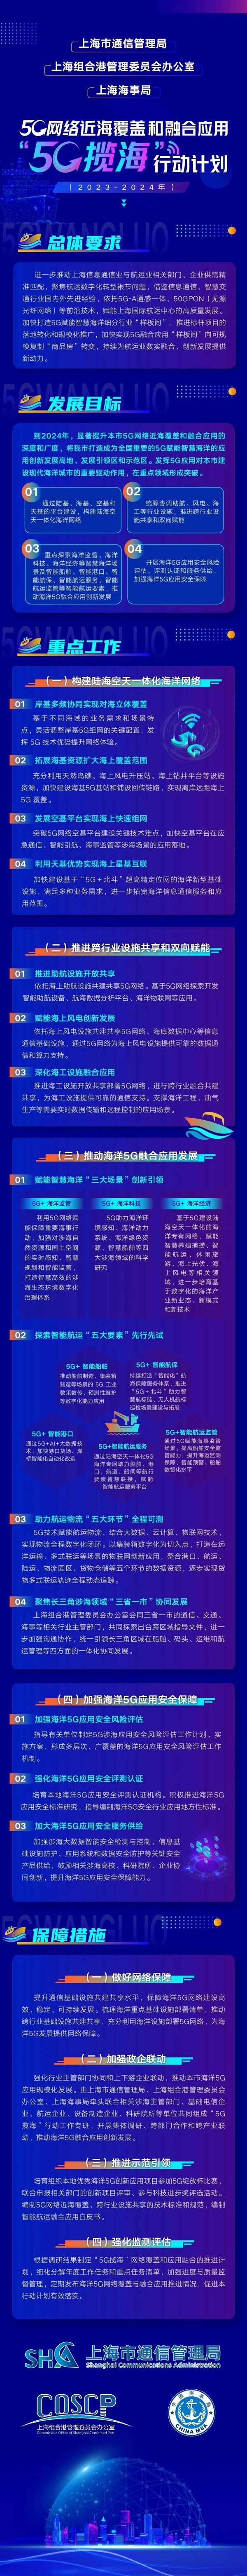 上海發布“5G攬?！毙袆佑媱?，推進5G網絡近海覆蓋融合應用